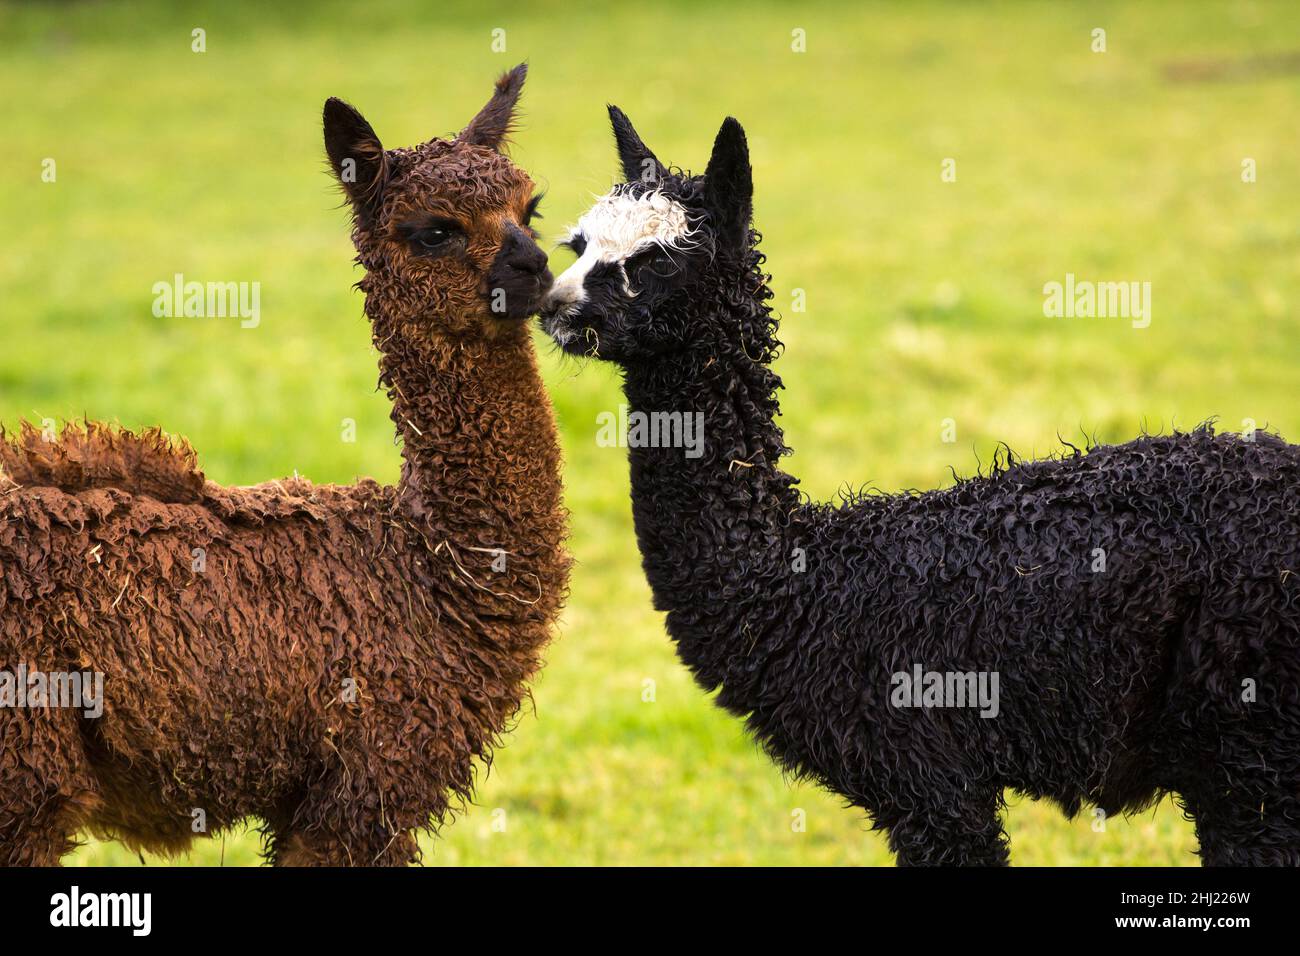 Cute alpaca babies on a farm Stock Photo